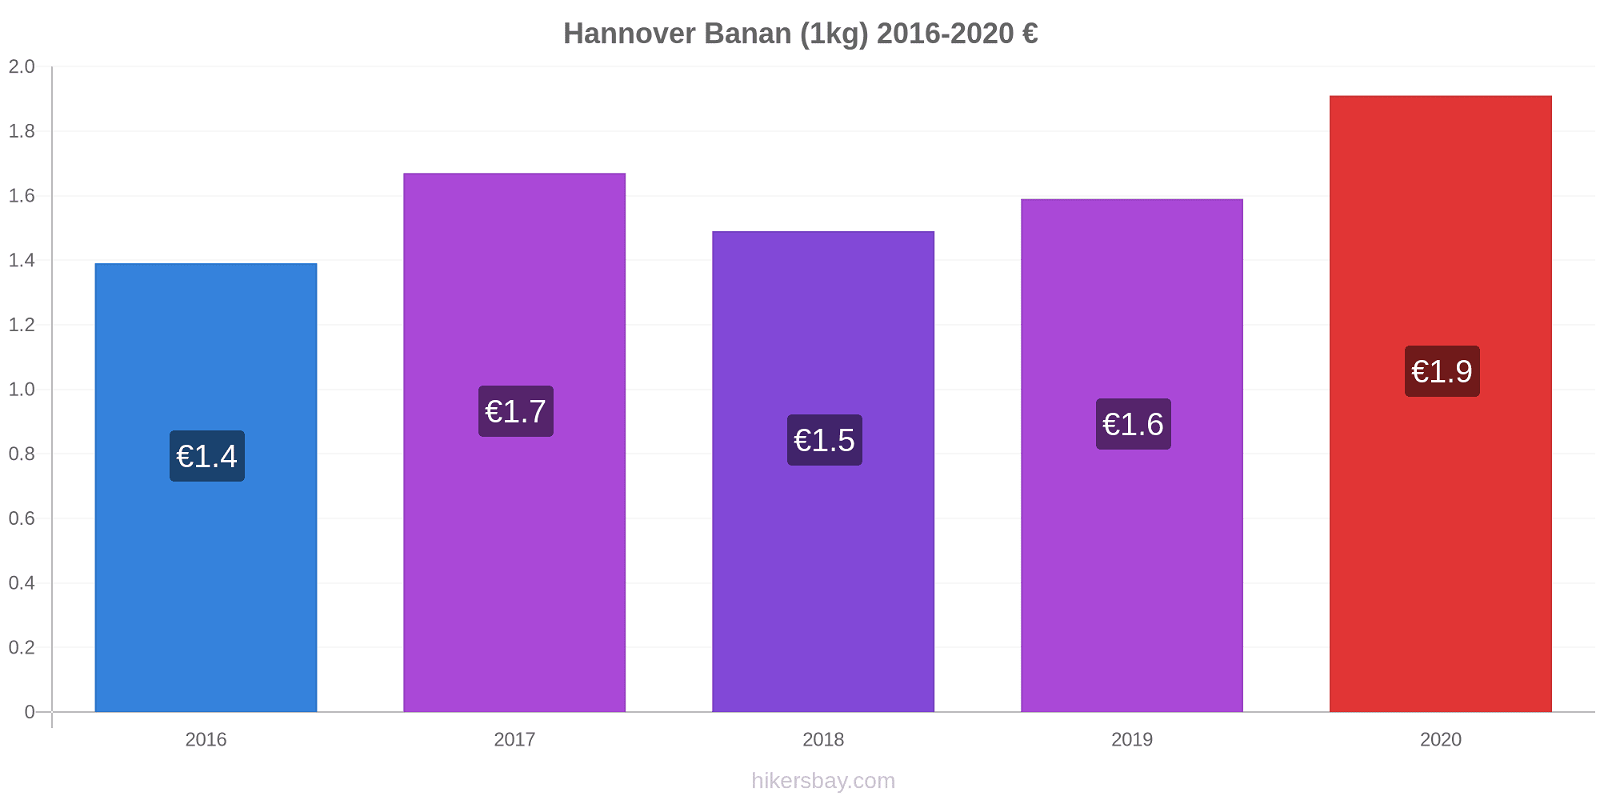 Hannover prisendringer Banan (1kg) hikersbay.com